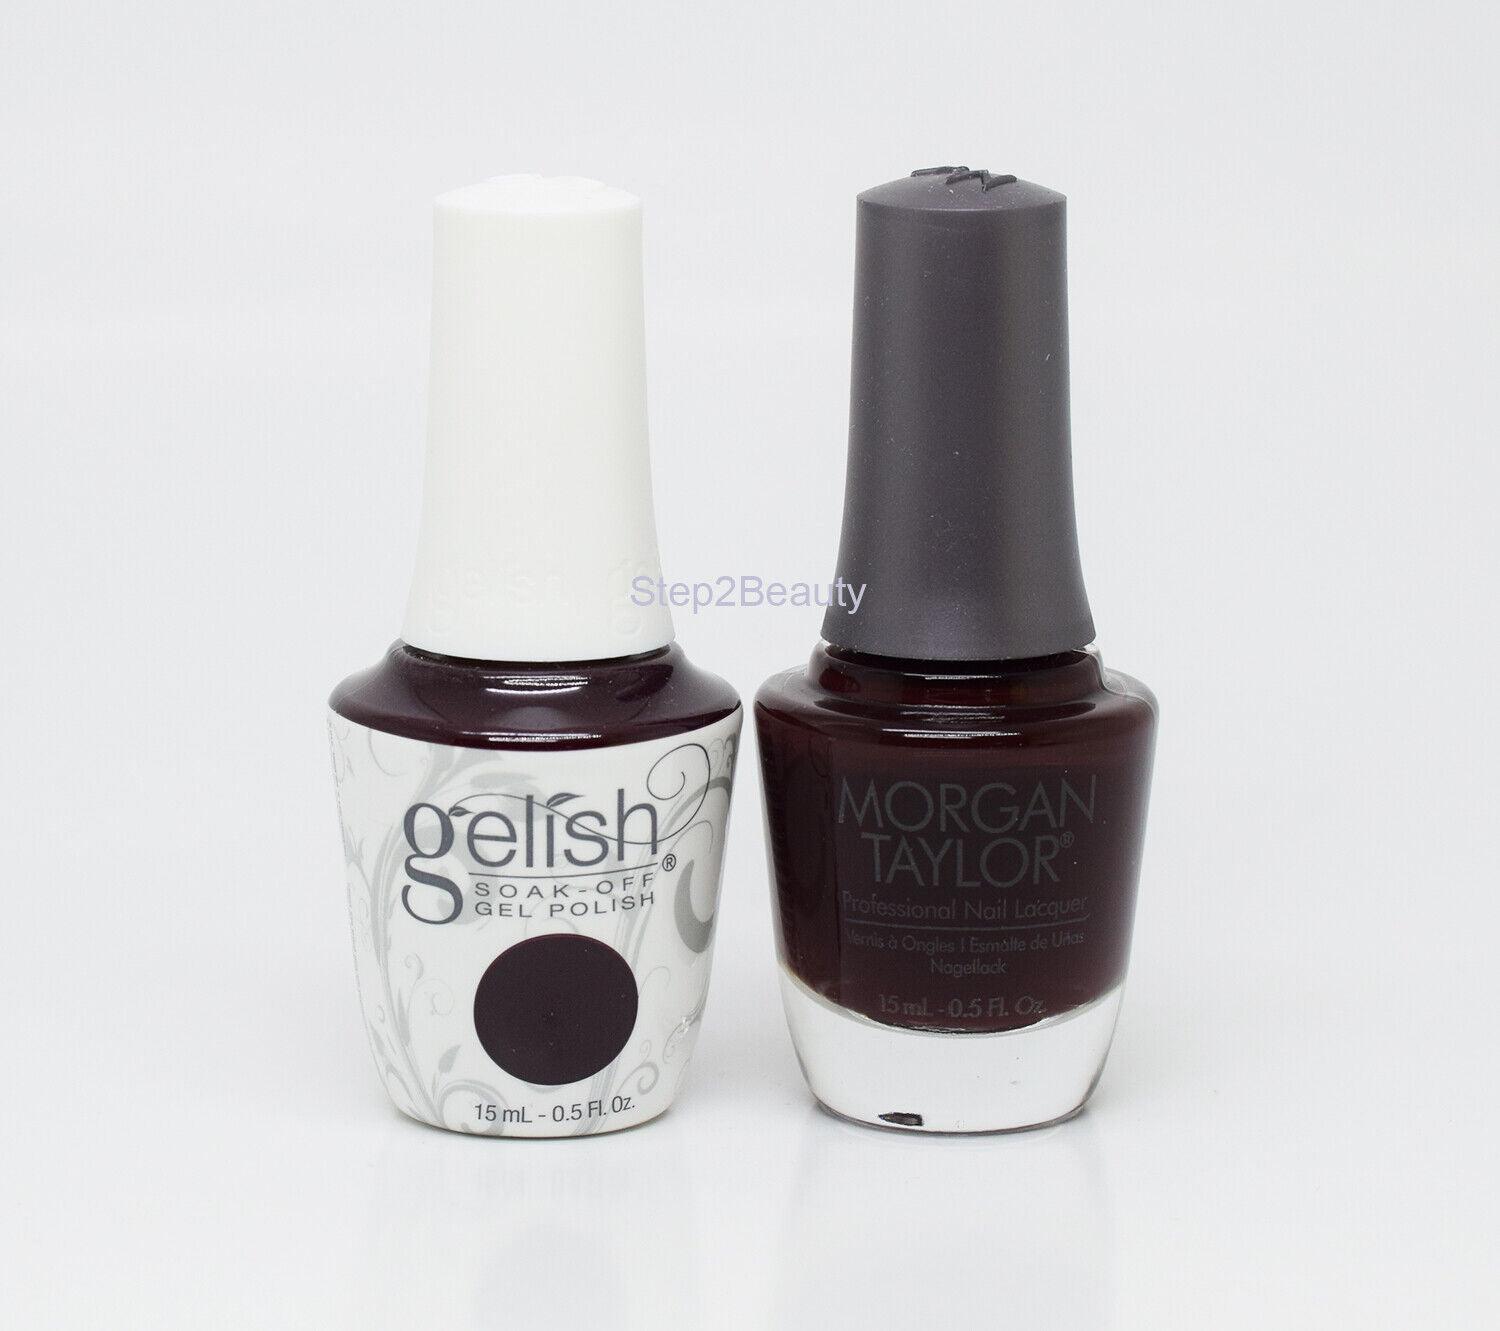 Gelish DUO Soak Off Gel Polish + Morgan Taylor Nail Lacquer - #867 Black Cherry